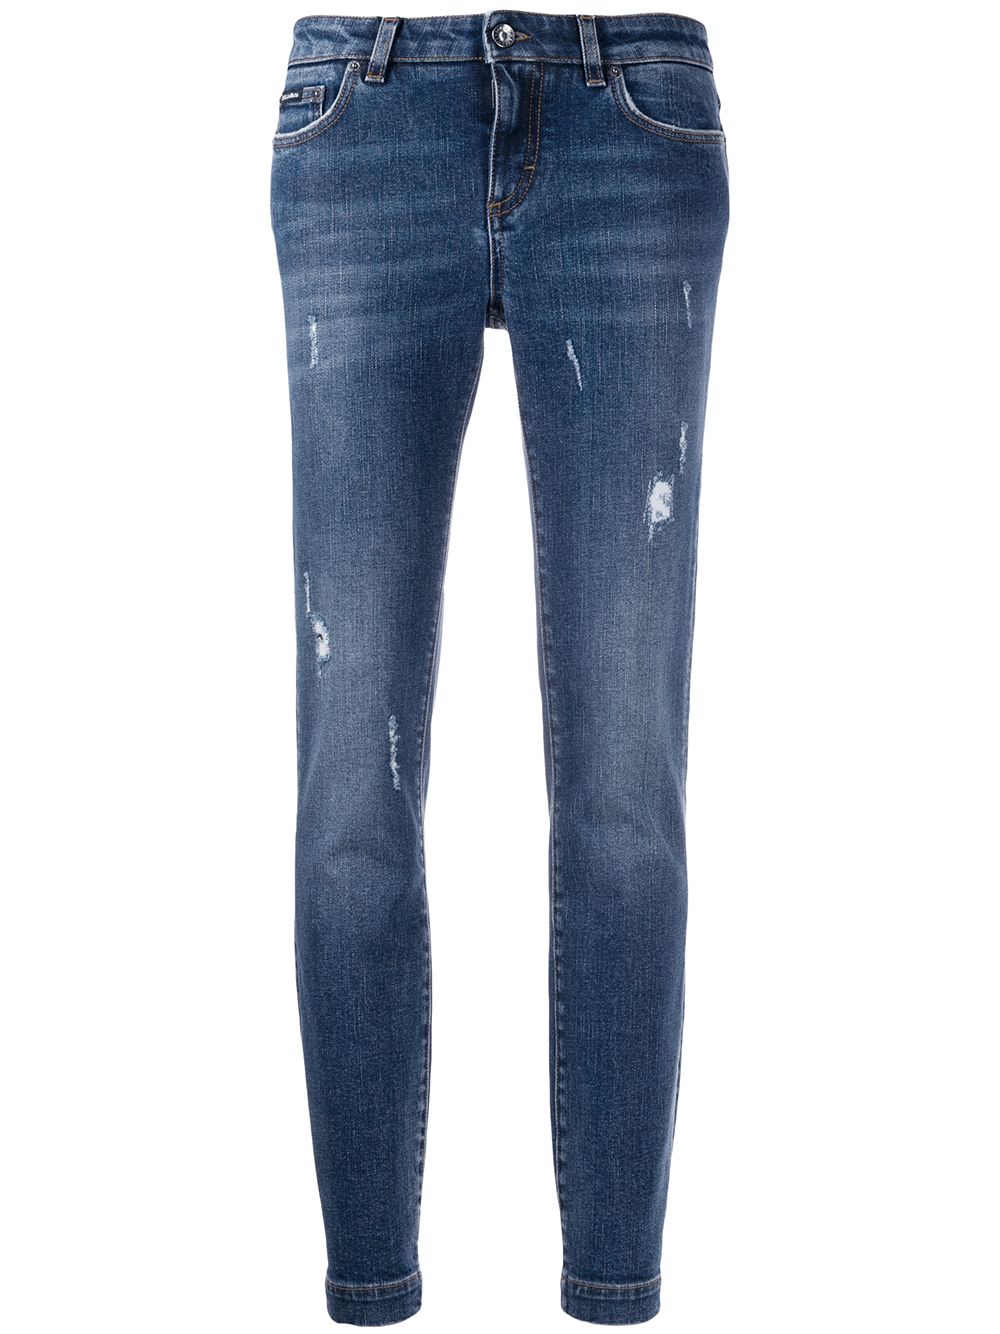 фото Dolce & gabbana джинсы скинни с эффектом потертости